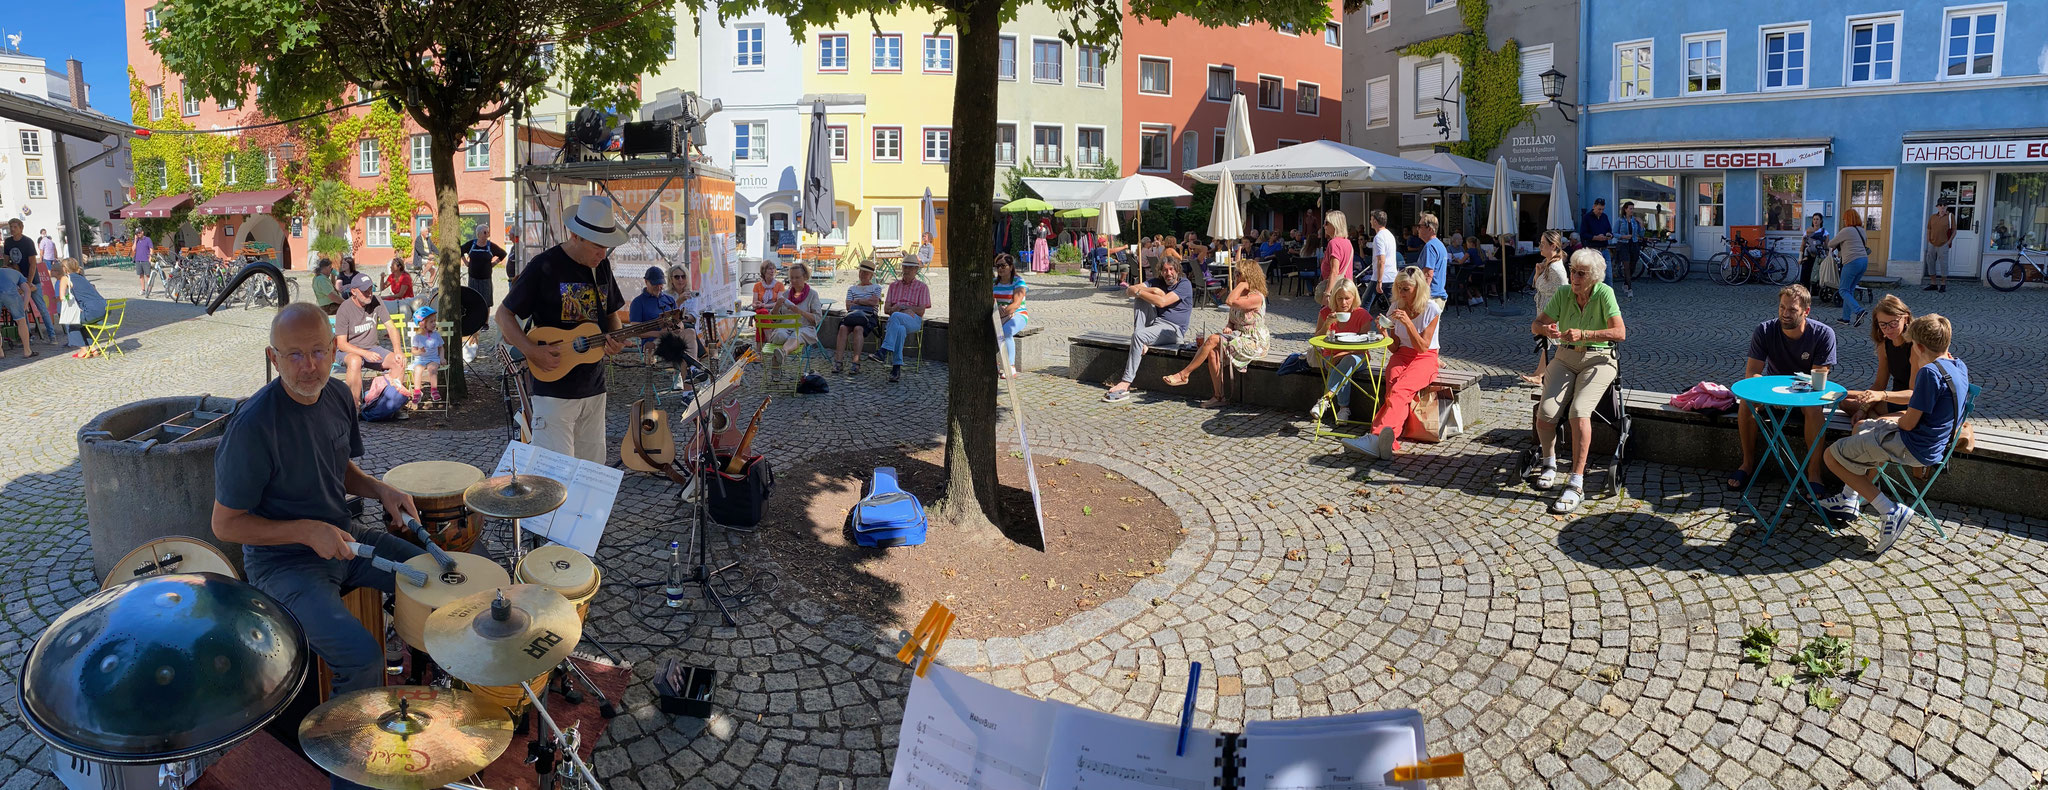 Musikalischer Samstag in Wasserburg - Panoramafoto